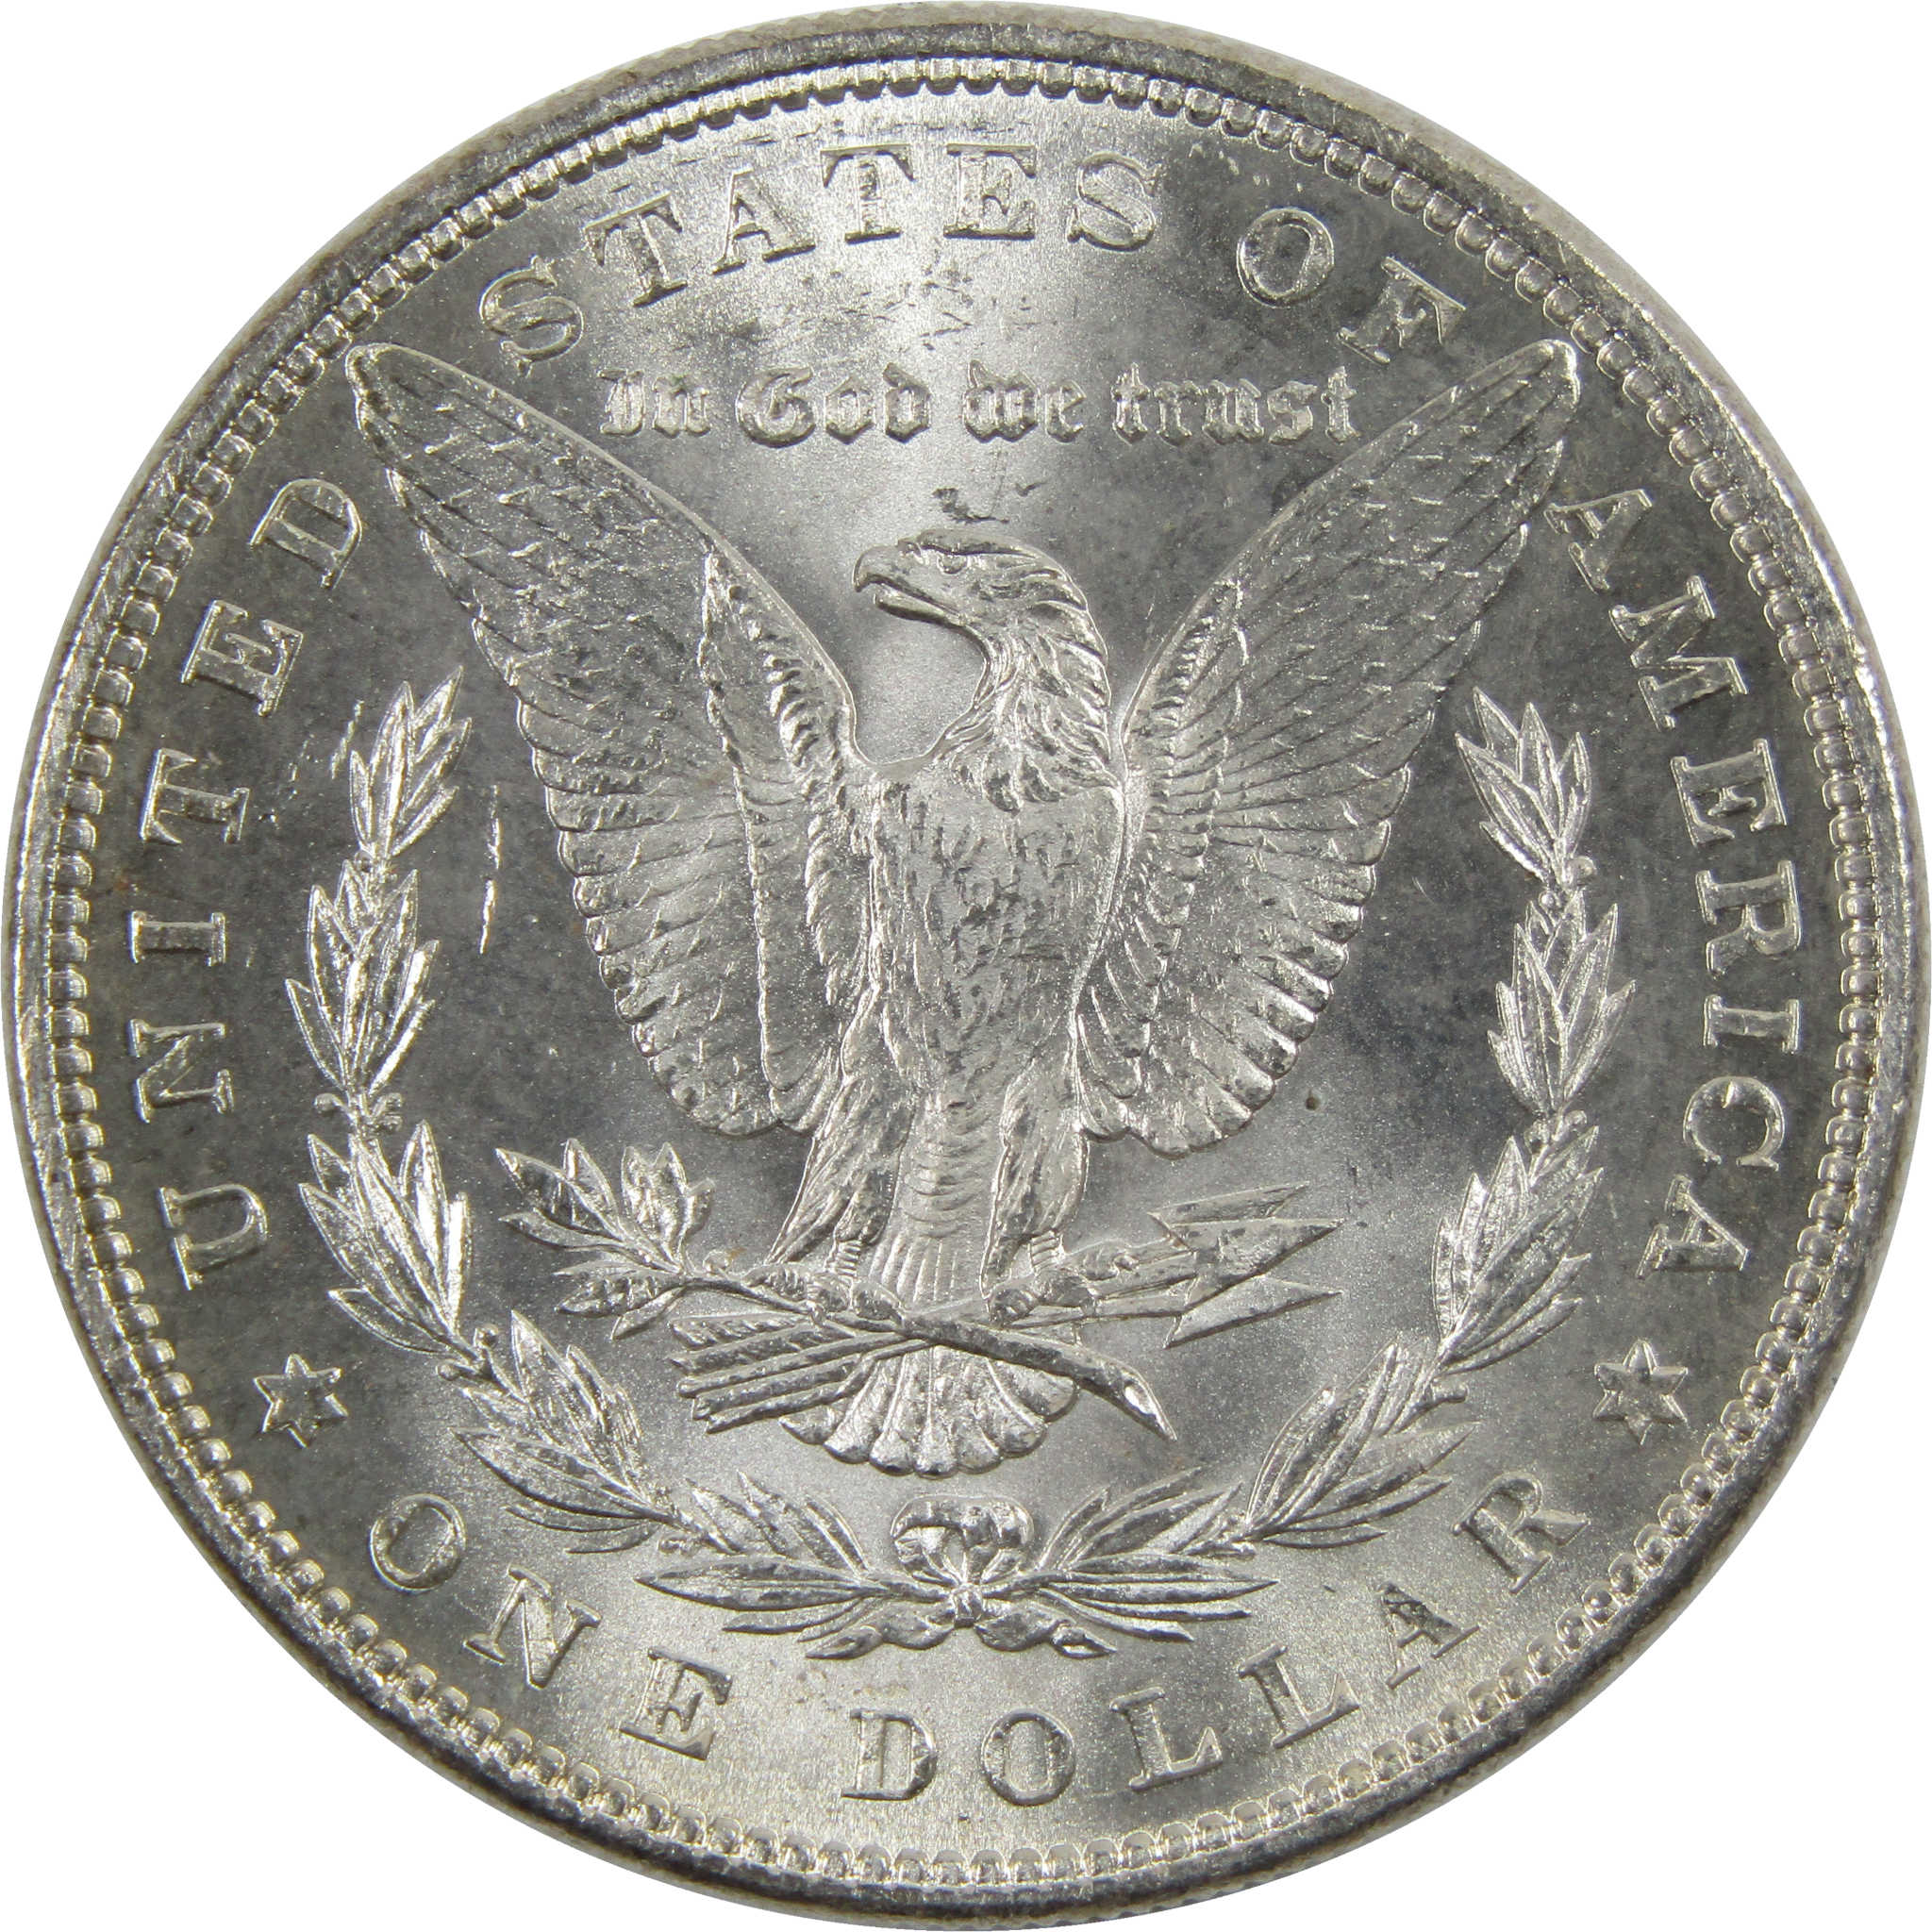 1884 Morgan Dollar BU Uncirculated 90% Silver $1 Coin SKU:I6014 - Morgan coin - Morgan silver dollar - Morgan silver dollar for sale - Profile Coins &amp; Collectibles